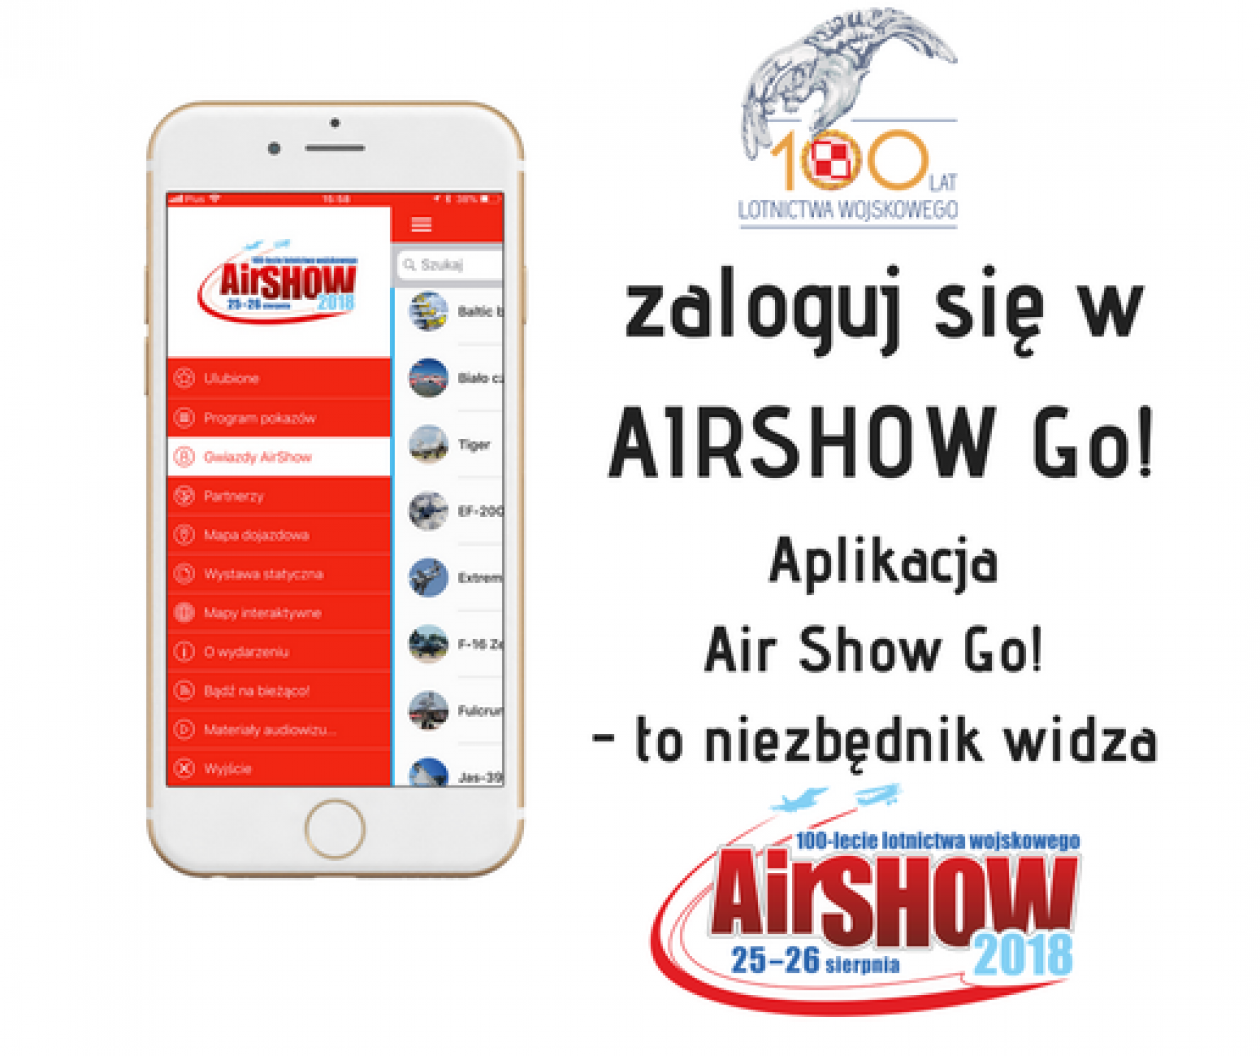 Air Show 2018: Sprawdź mapę lotniska w aplikacji i na komputerze